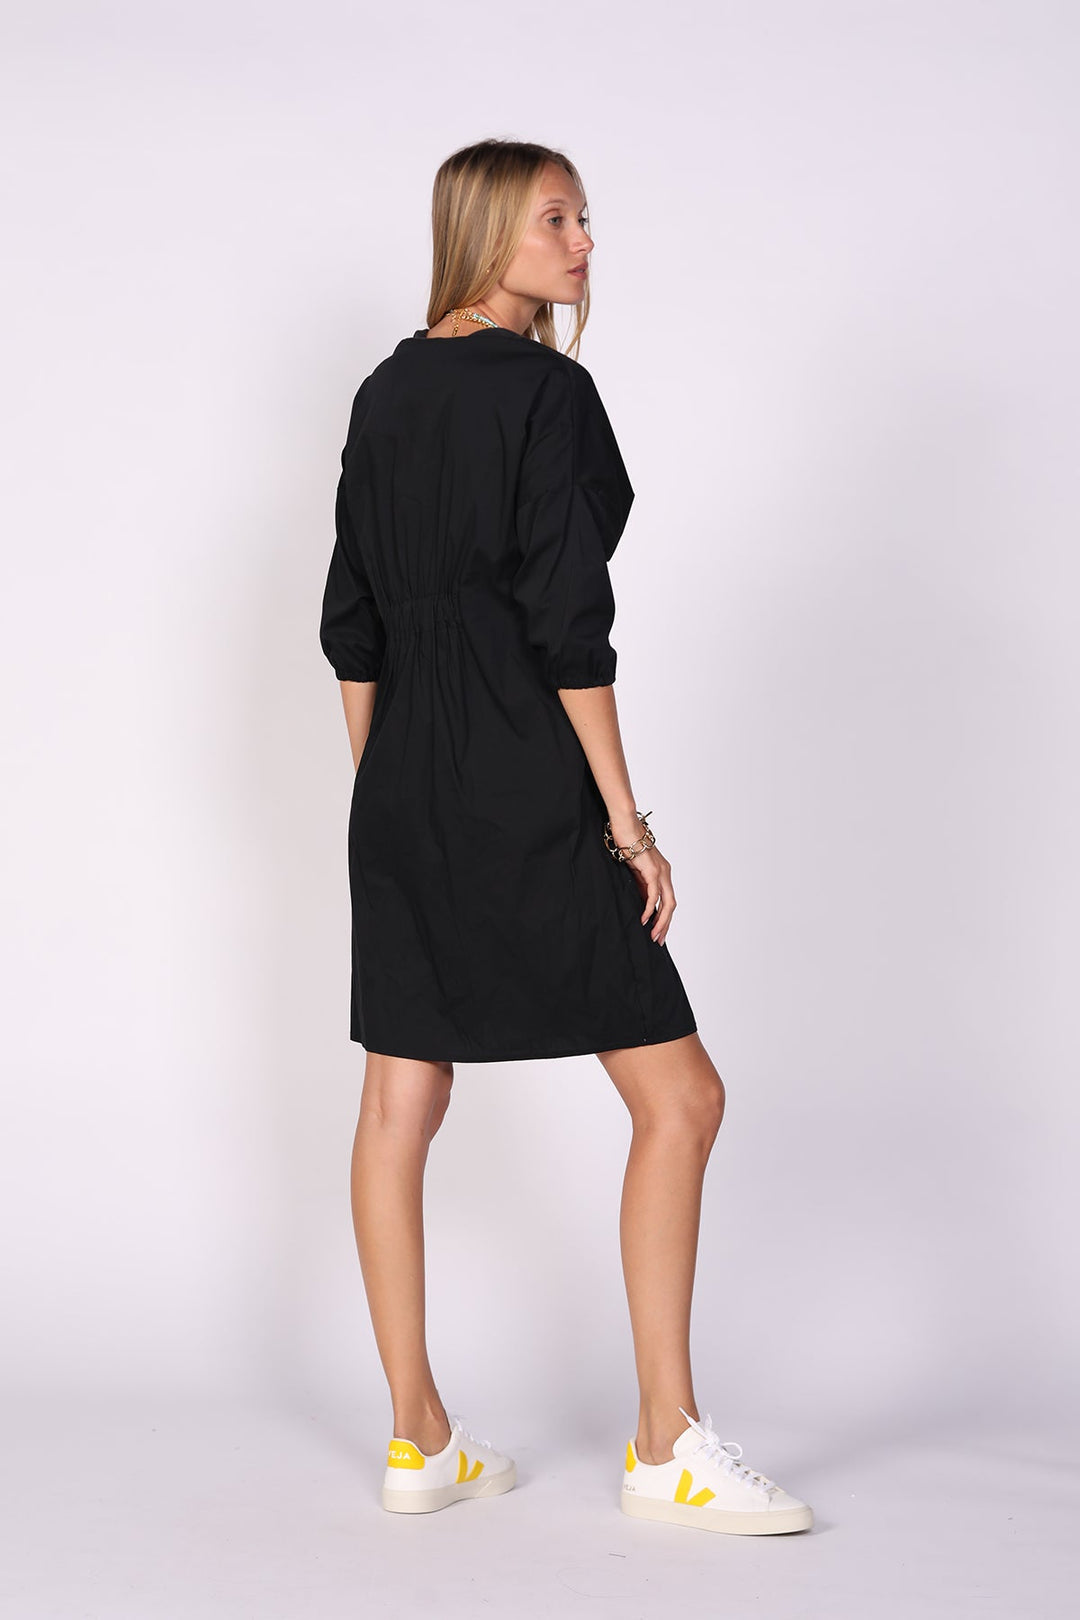 שמלת חורף אורגמי בצבע שחור - Ayelet Weinman